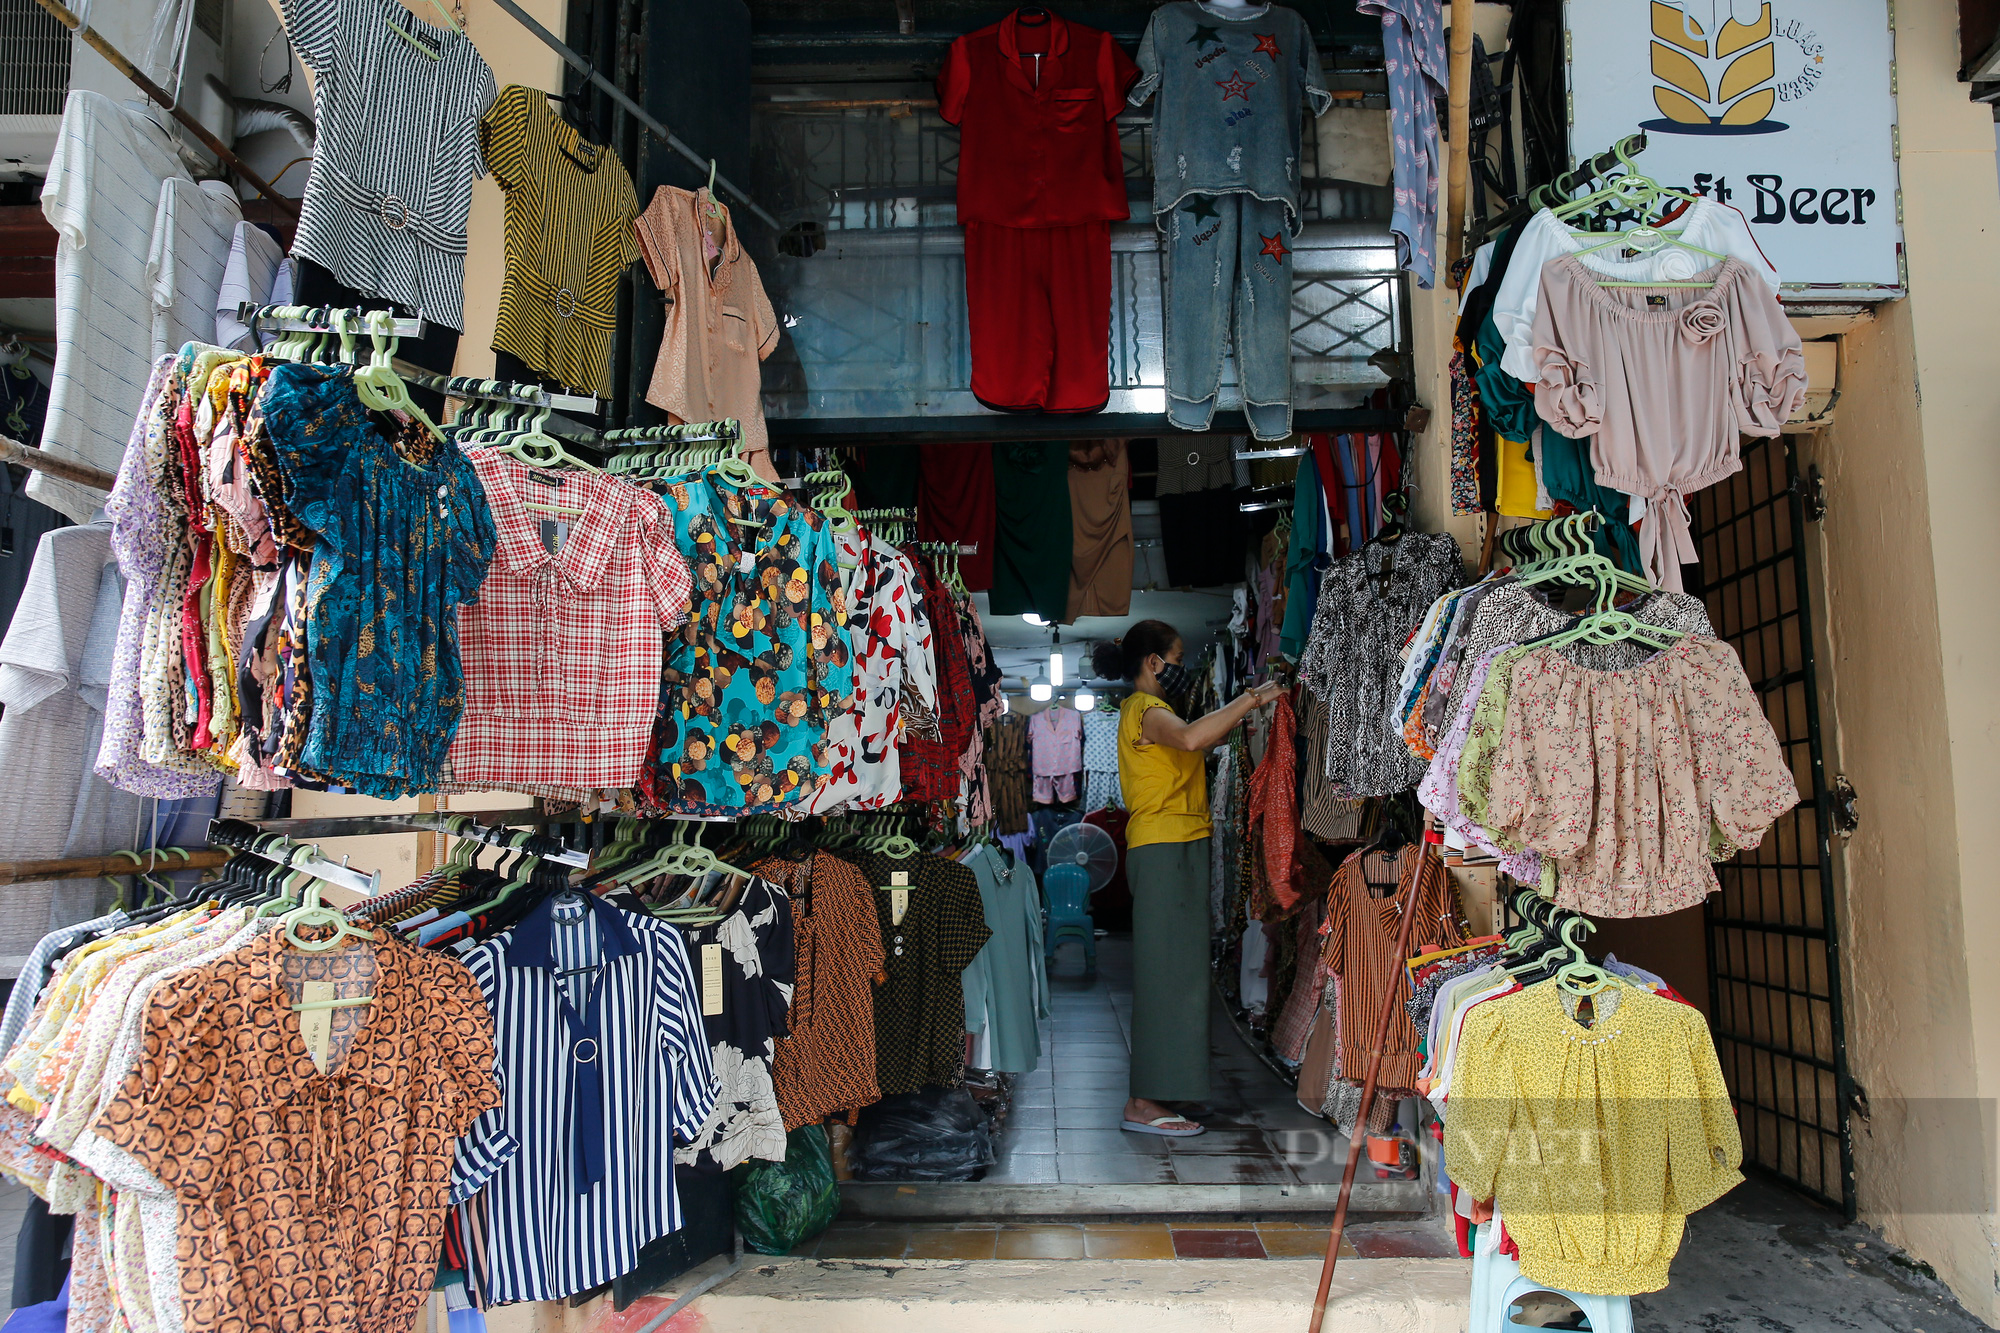 Giá thuê giảm 50%, chủ nhà vẫn bị “bùng” tiền tại phố buôn bán sầm uất nhất Hà Nội - Ảnh 4.